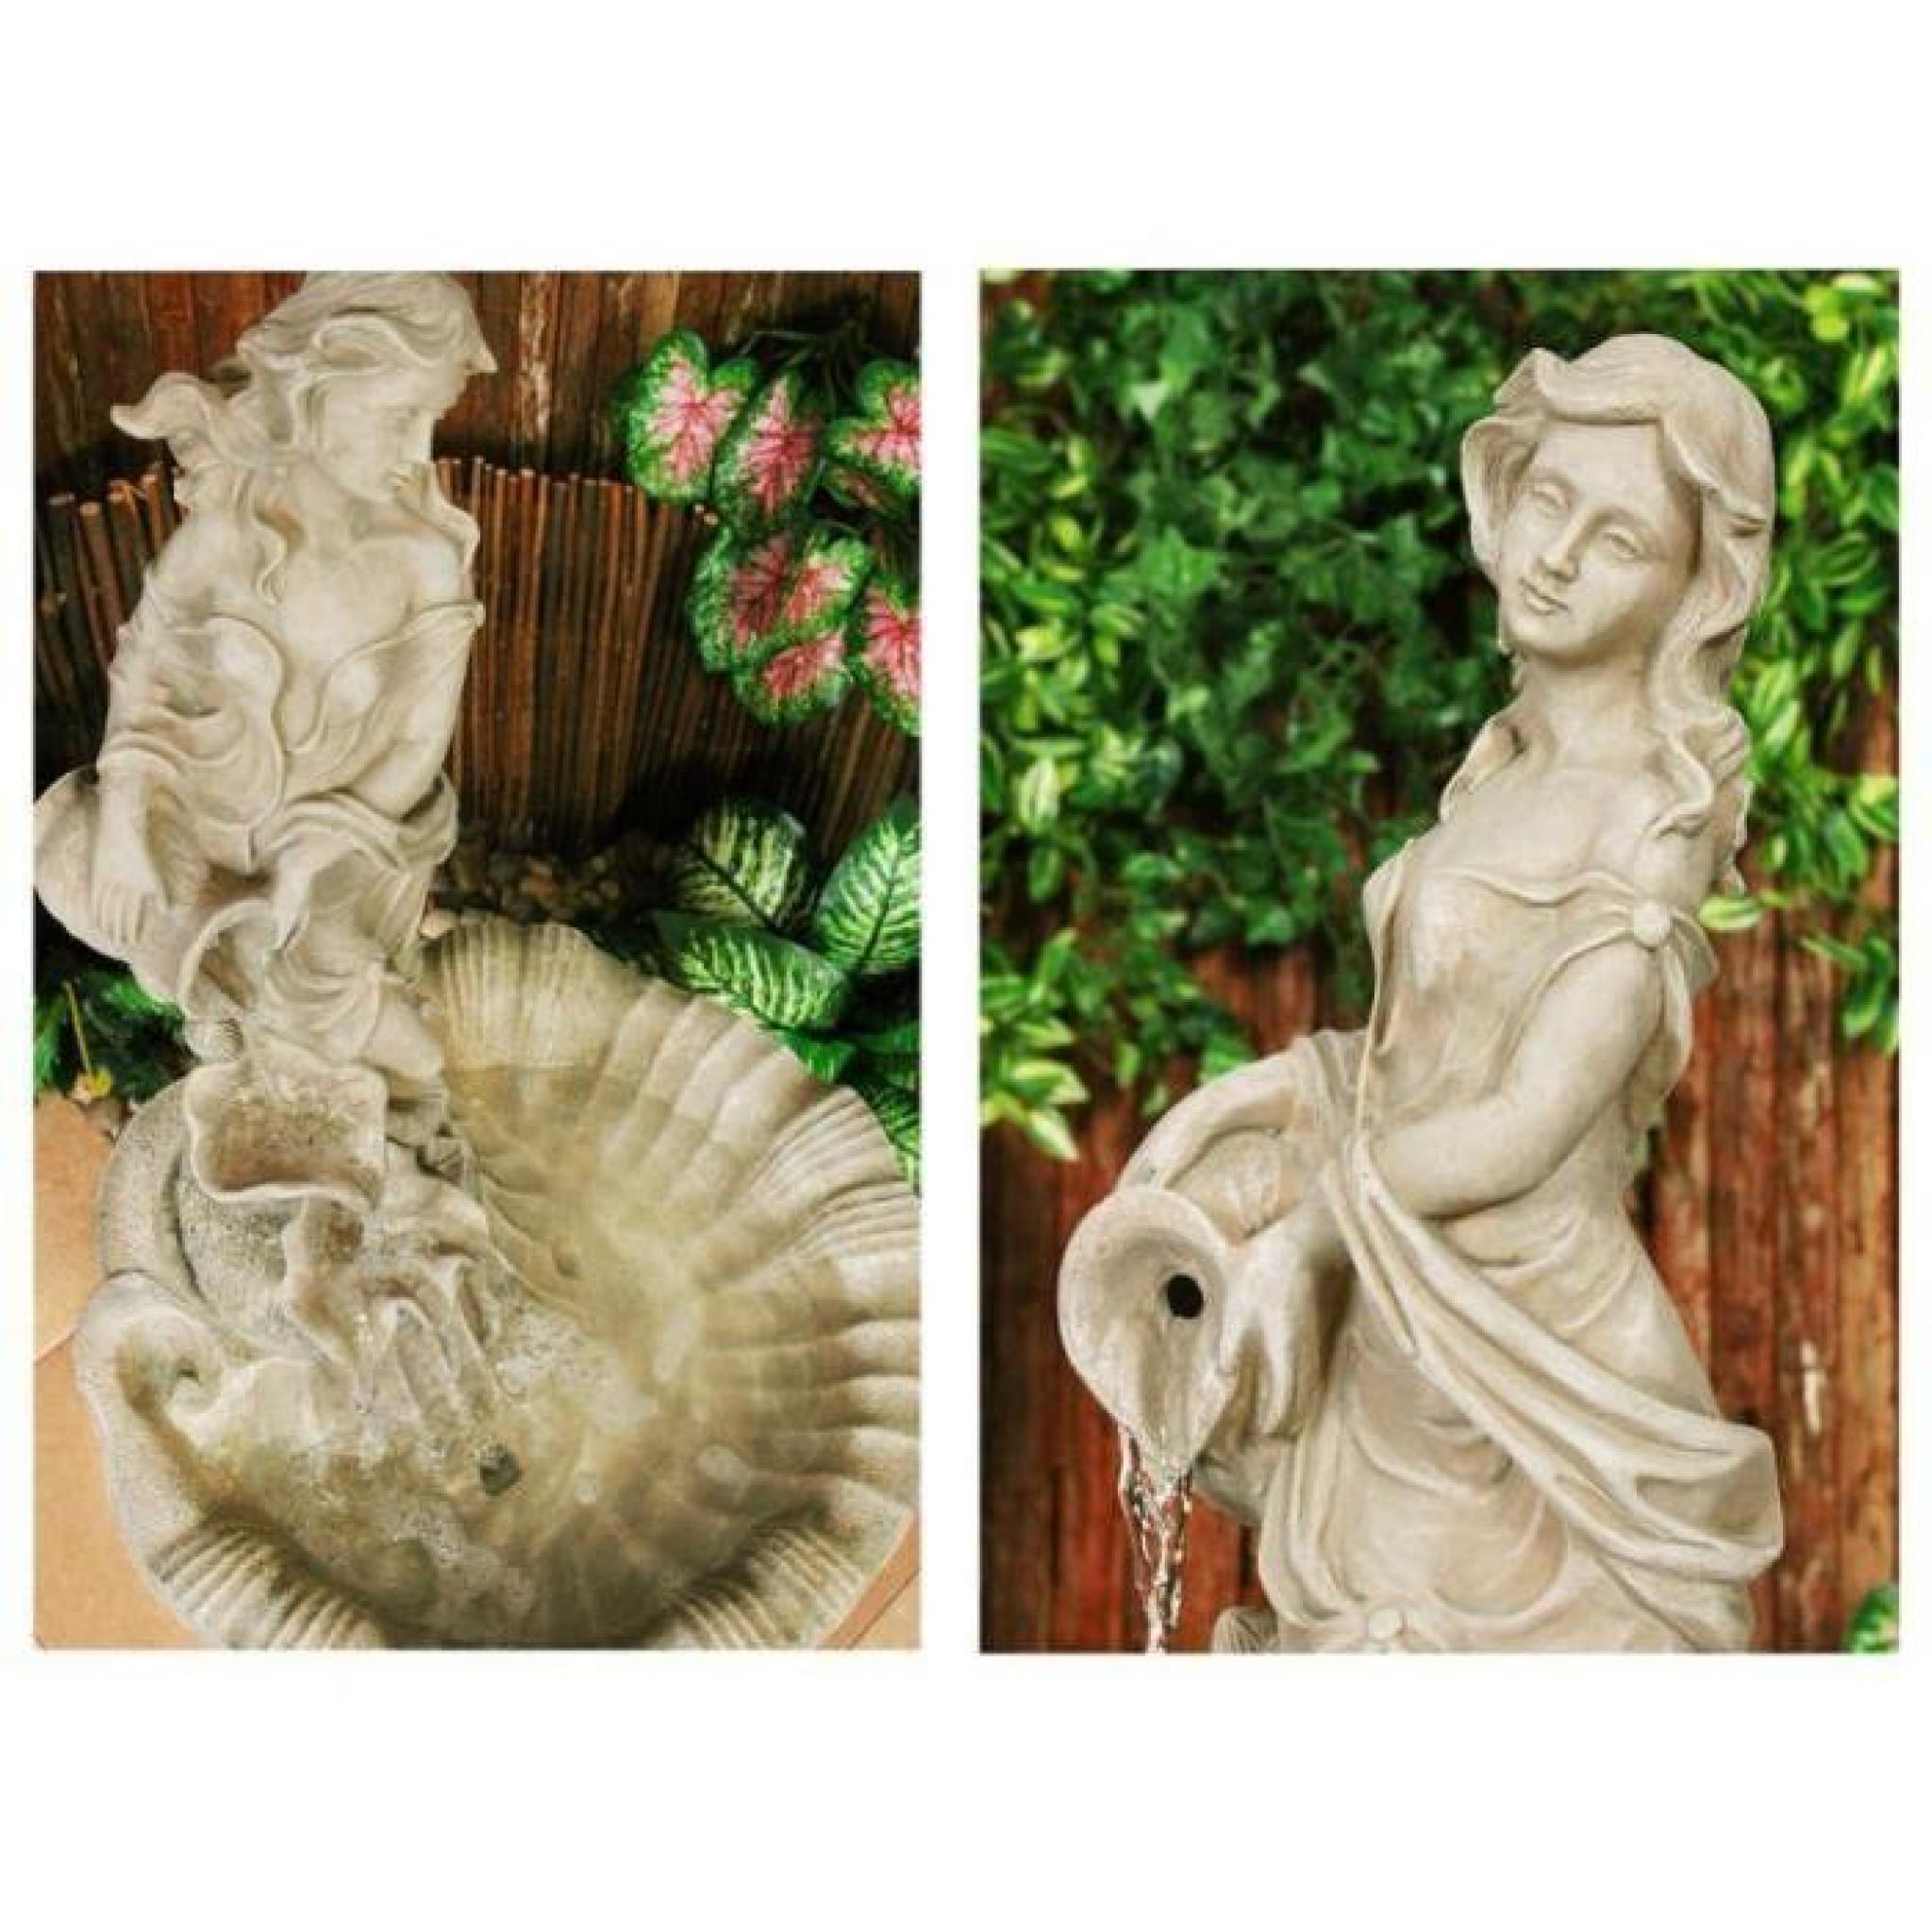 Primrose Ambiente Fontaine Couleur Nacre - Figurine Liliana sur pilier pas cher